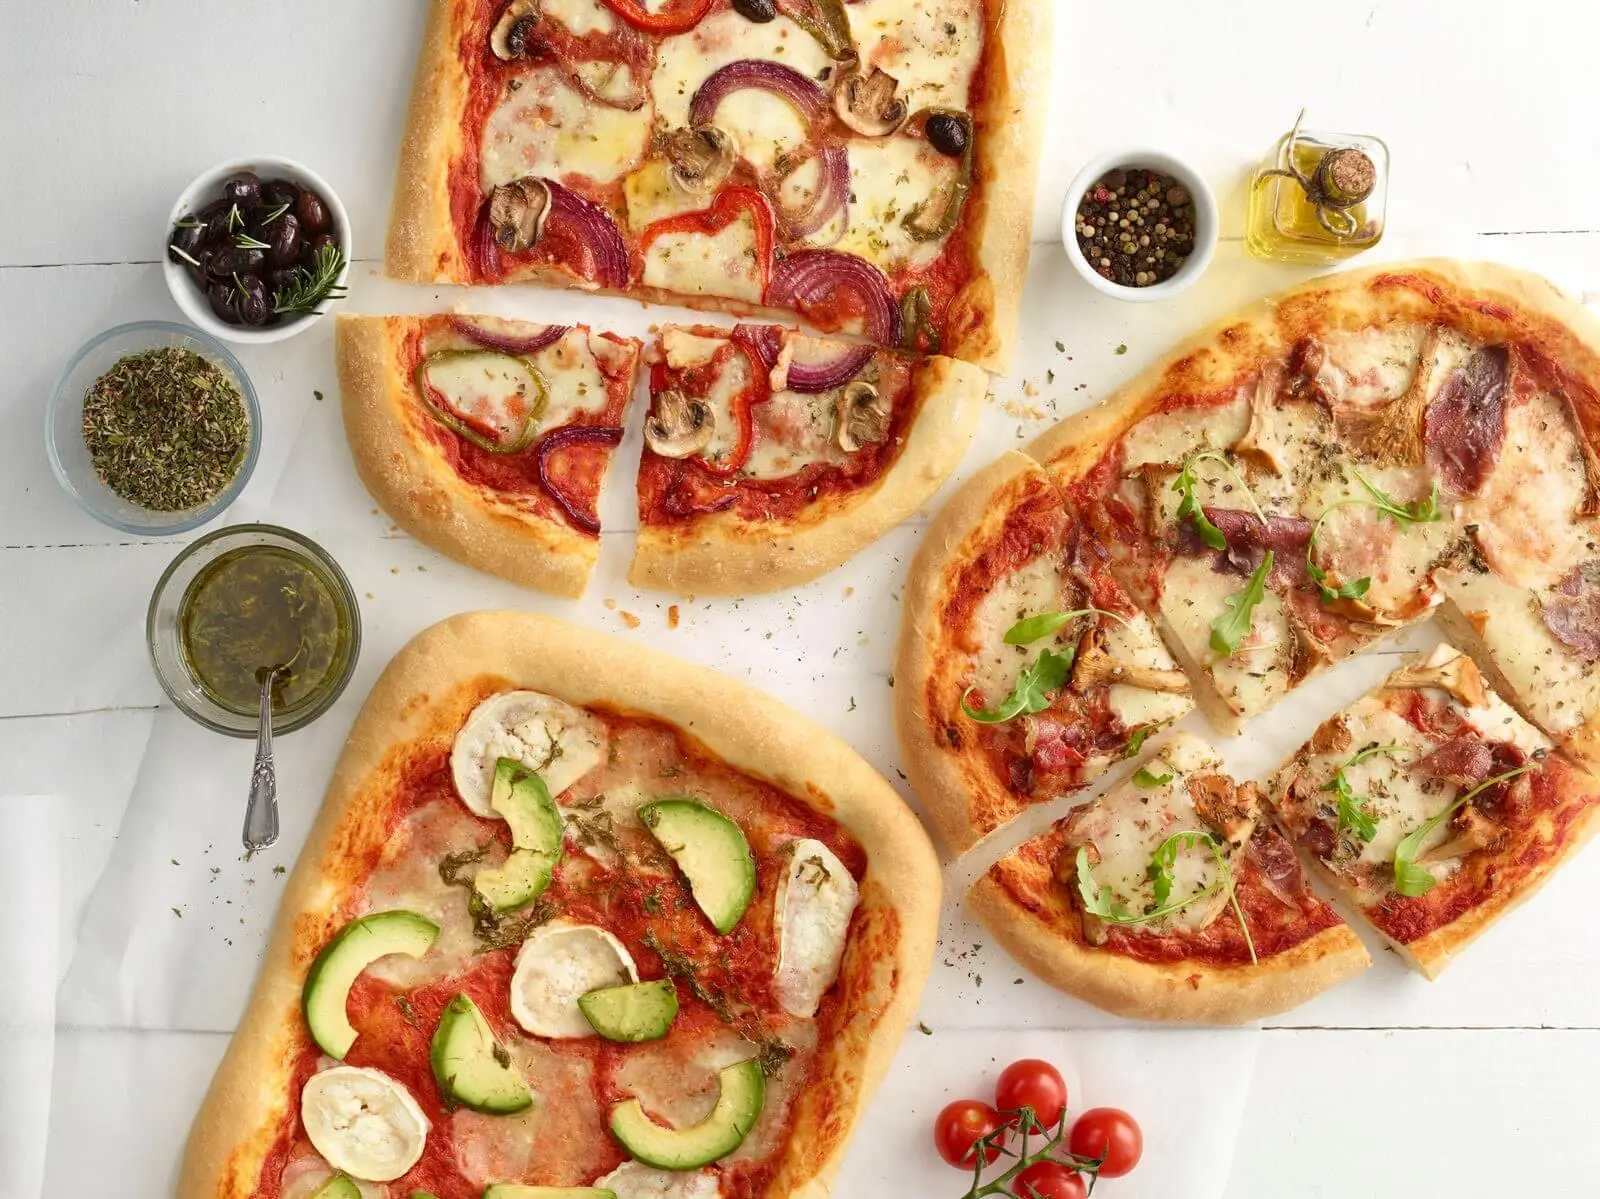 los vegetarianos comen pizza - Qué comen los vegetarianos estrictos